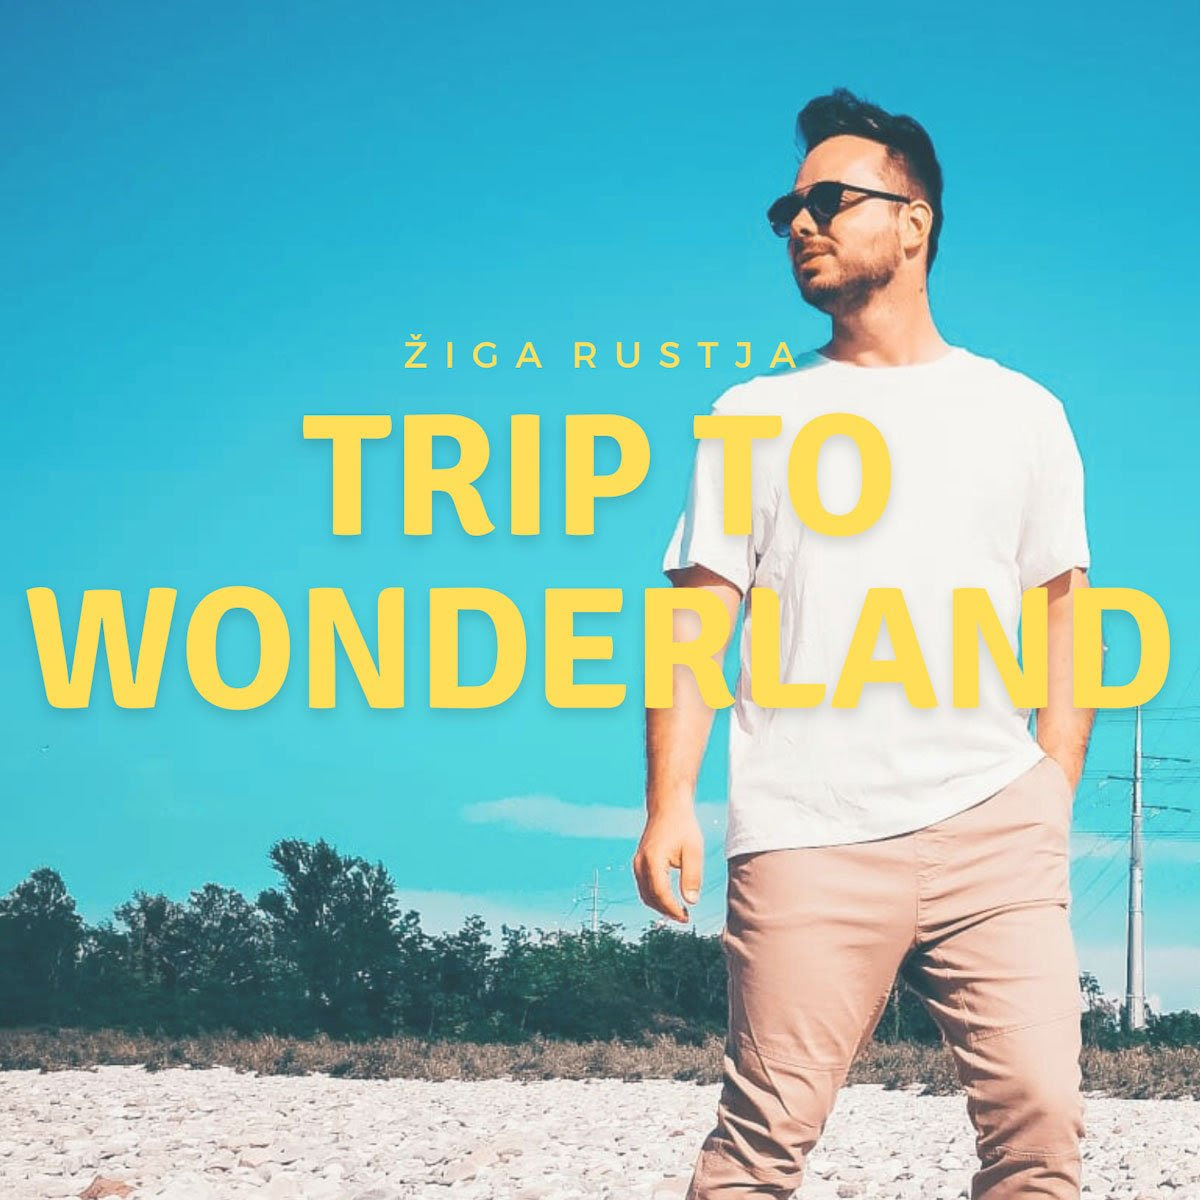 ZIGA RUSTJA: da venerdì 3 maggio disponibile in digitale il nuovo singolo “TRIP TO WONDERLAND”